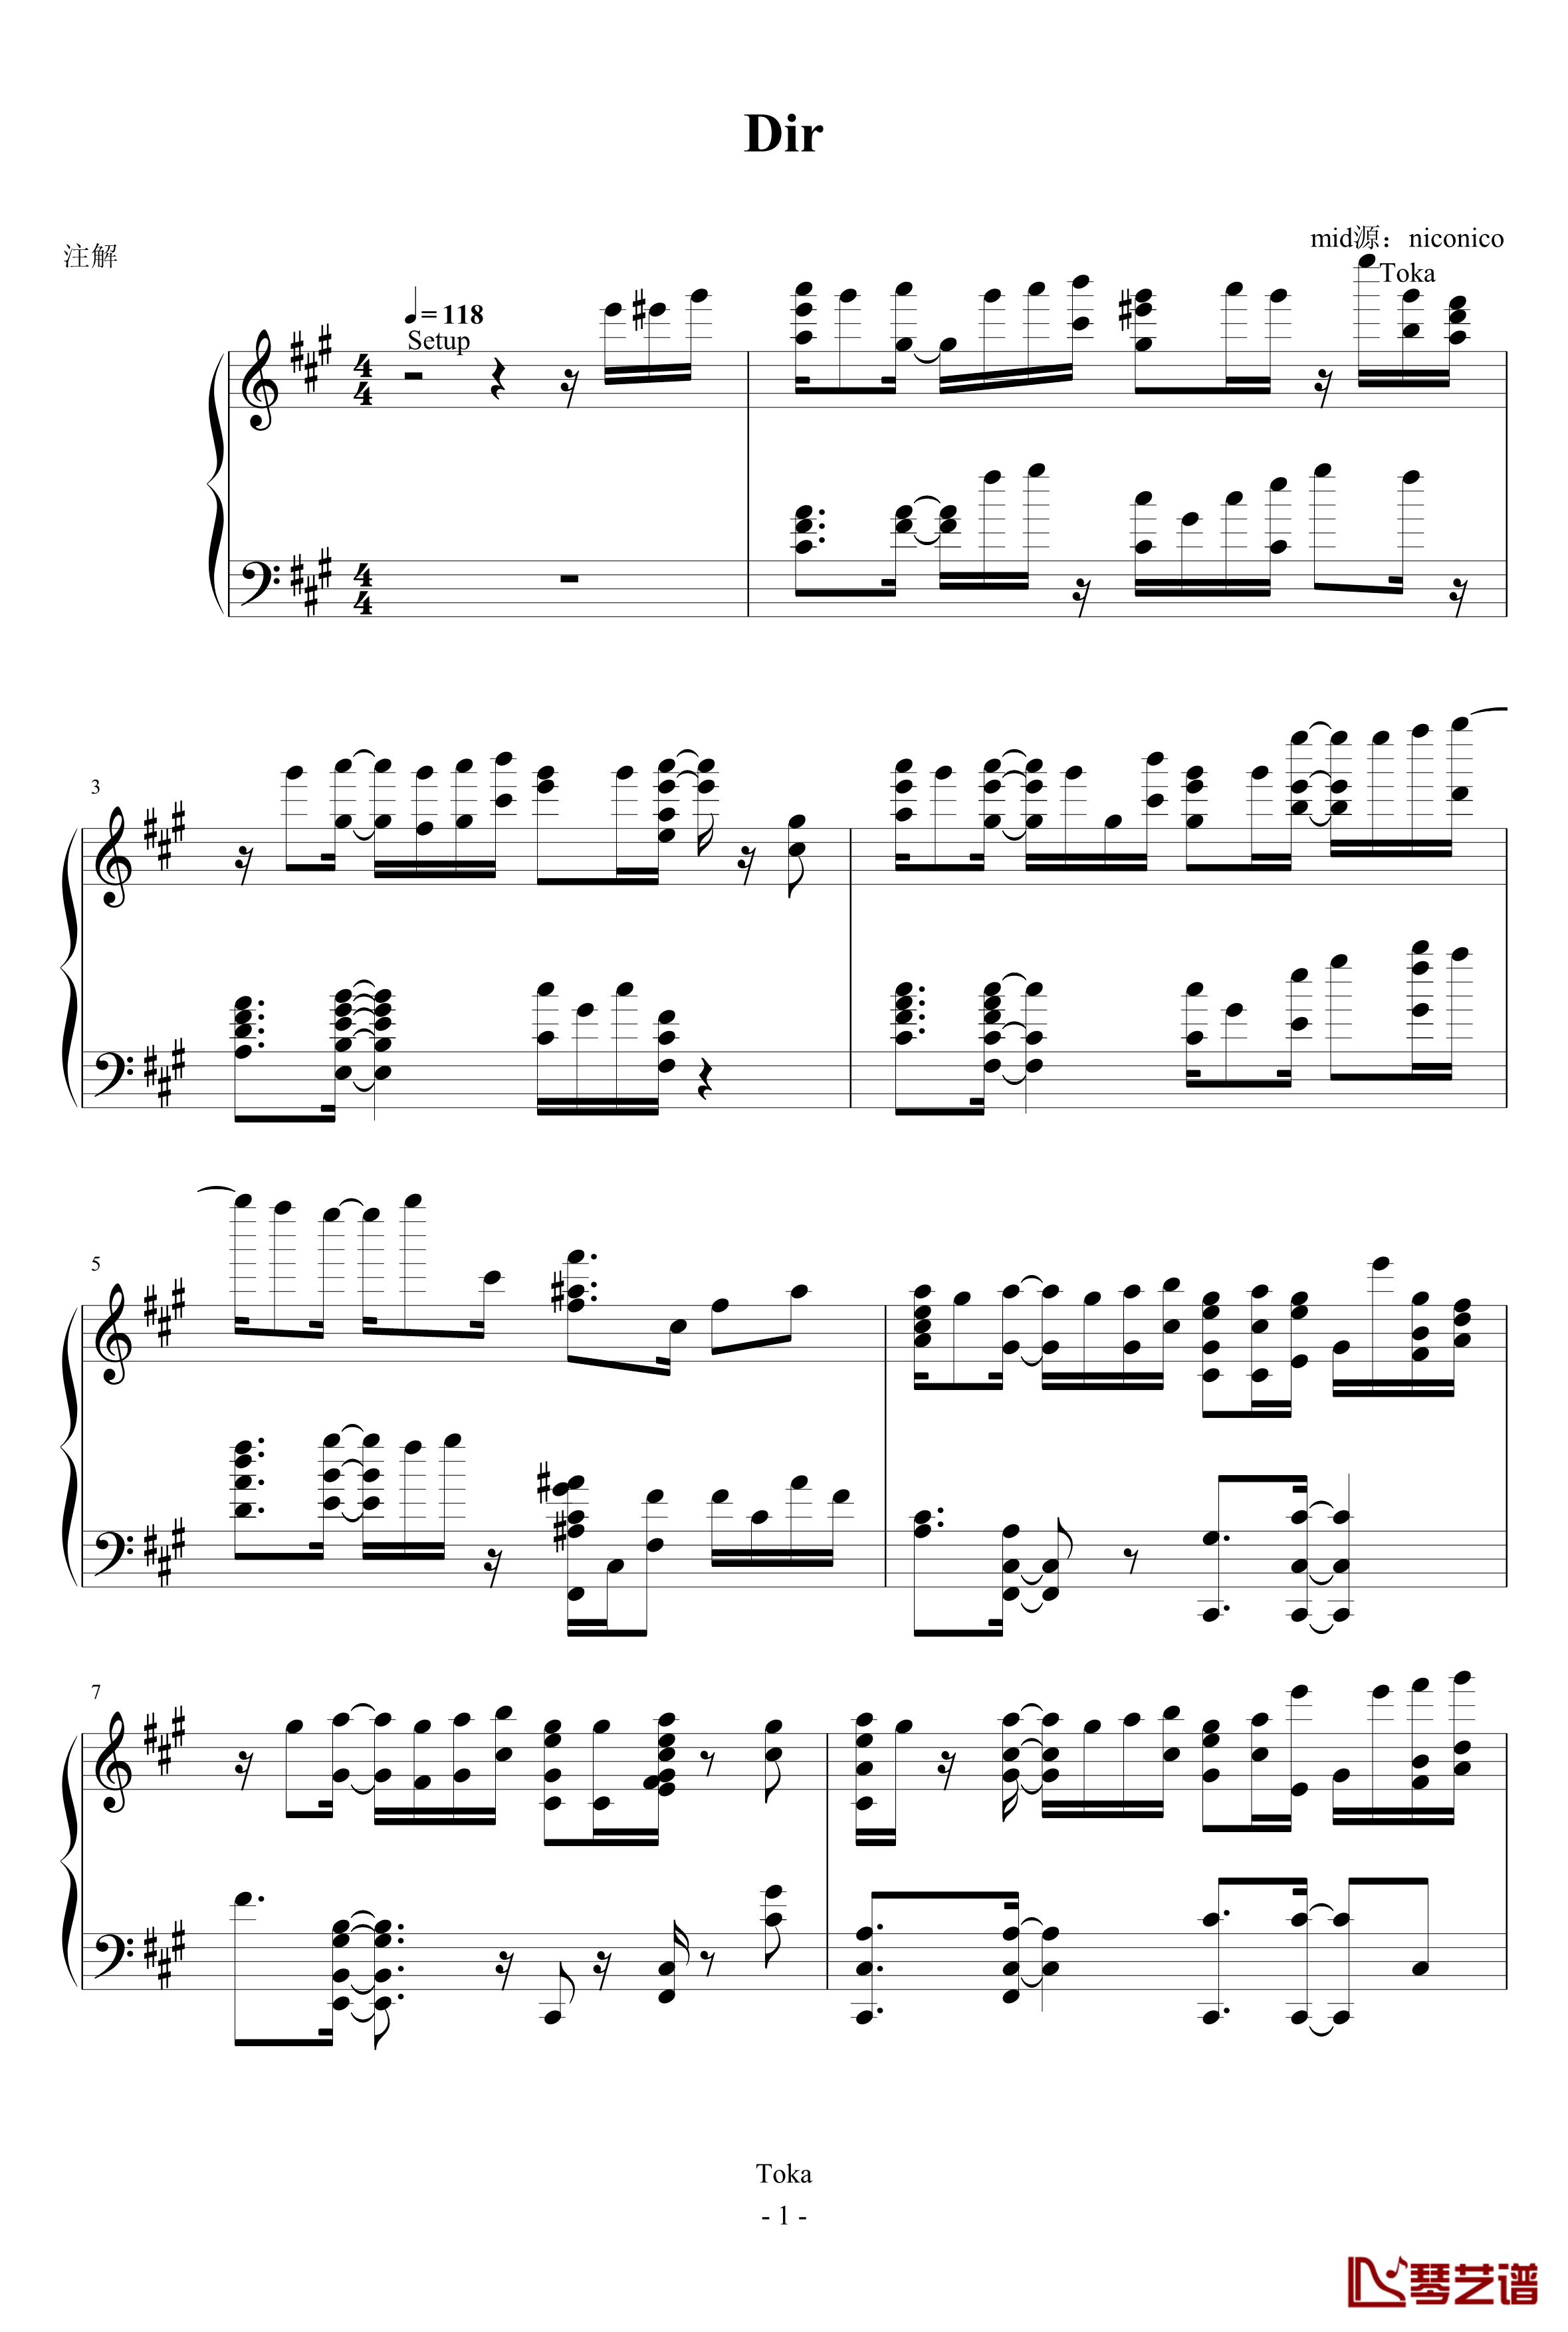 海猫BGM钢琴谱-Dir-海猫鸣泣之时1